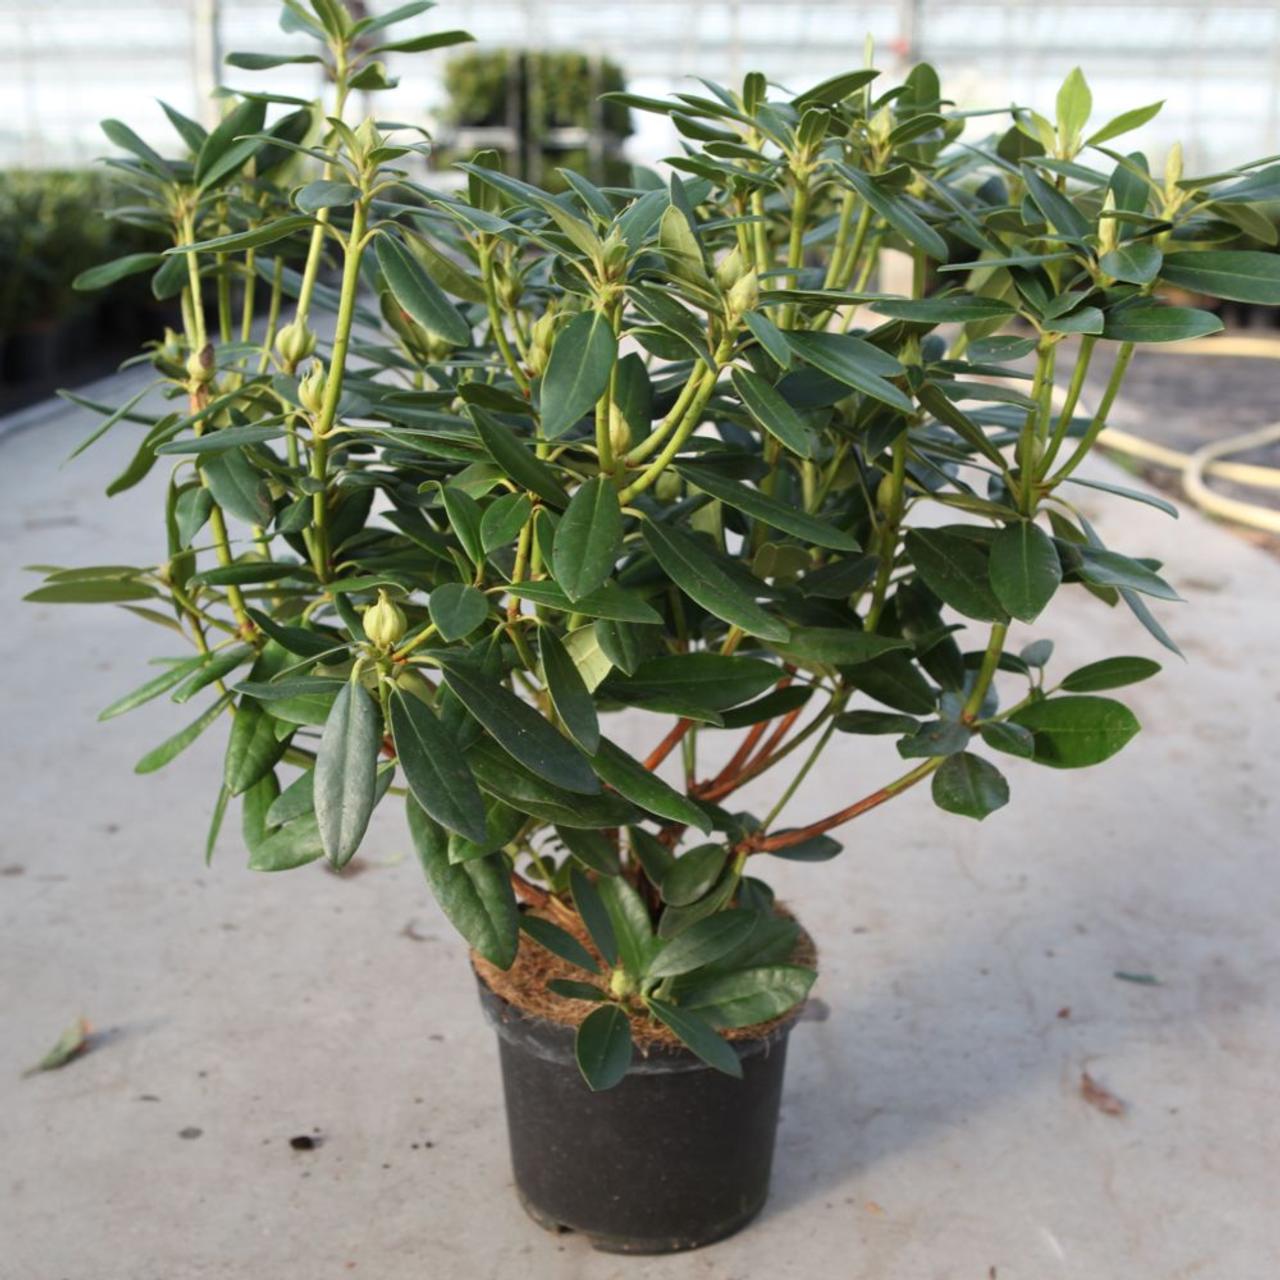 Rhododendron 'Catawbiense Grandiflorum' plant